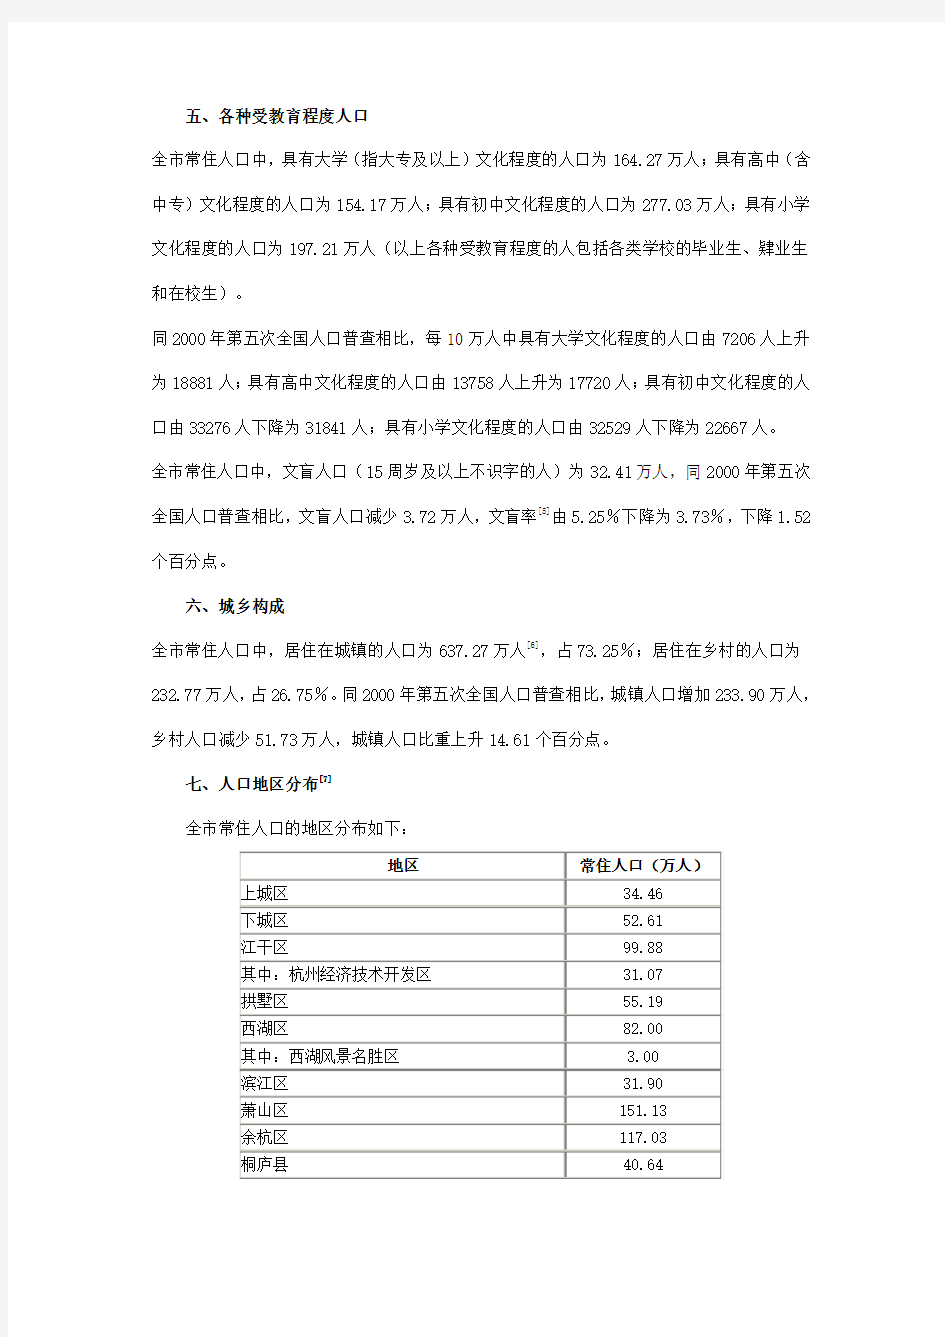 杭州市2010年第六次全国人口普查主要数据公报